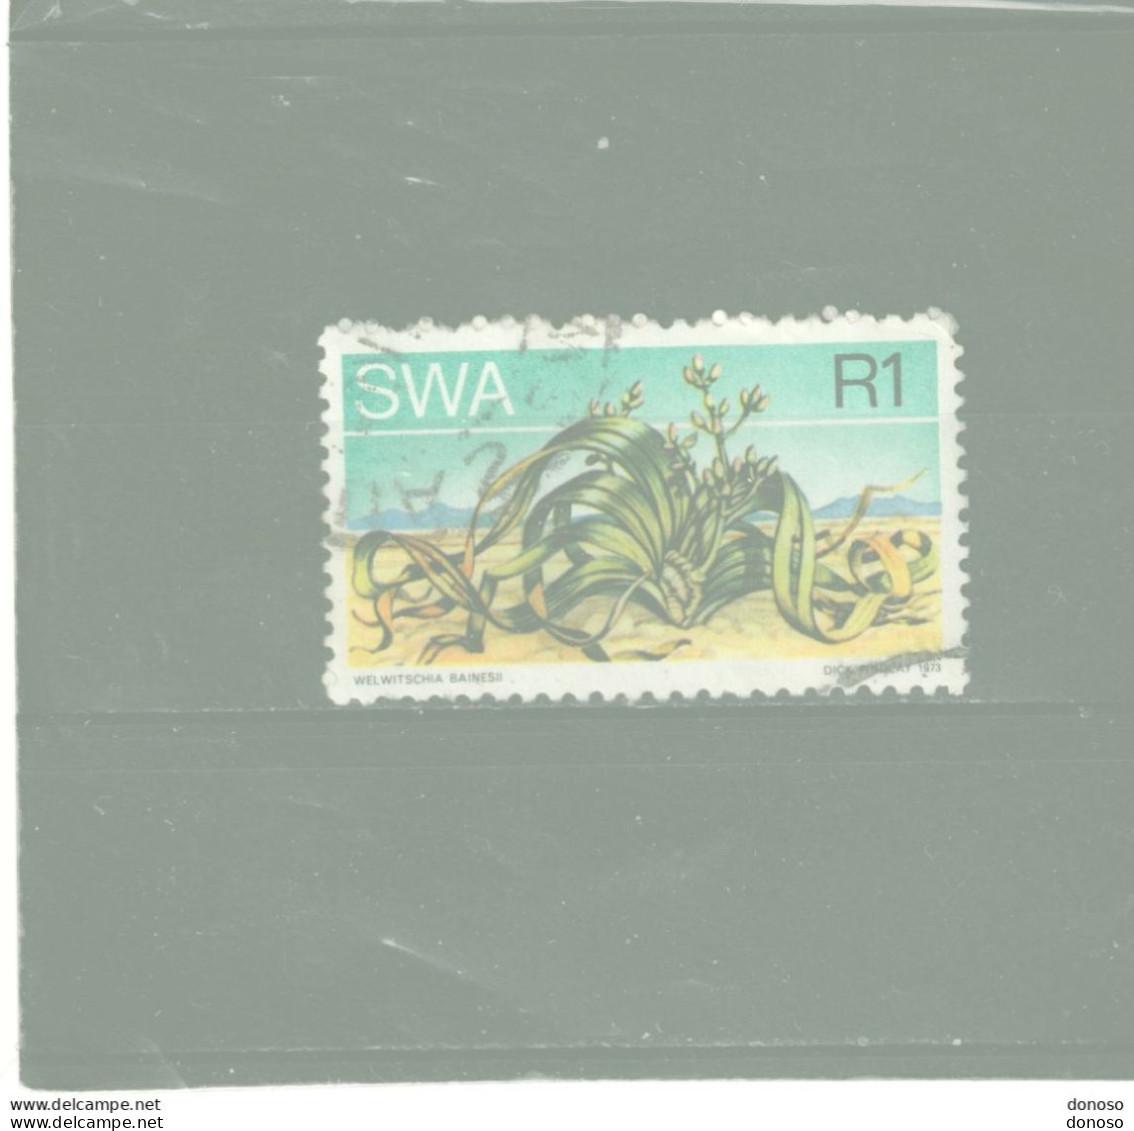 SWA SUD OUEST AFRICAIN 1973 Welwischia Yvert 331 Oblitéré Cote Yv 6,50 Euros - Afrique Du Sud-Ouest (1923-1990)